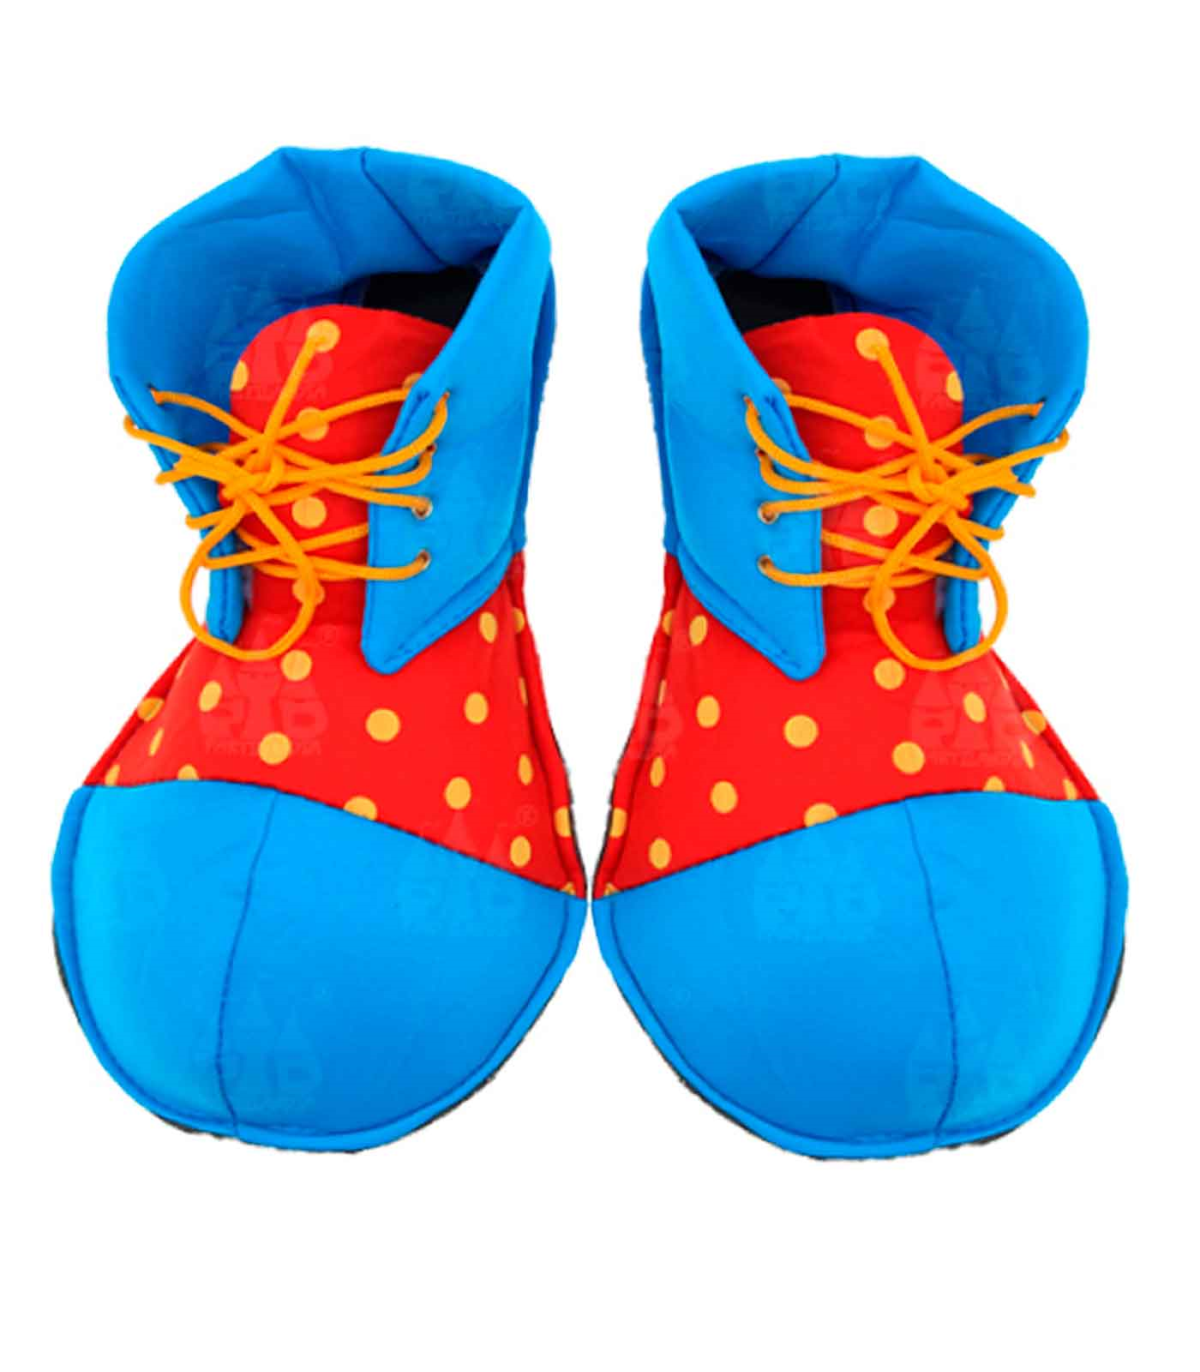 Zapatos payaso con lunares para jóvenes y adulto, complementos para  carnaval, halloween y celebraciones. 36 x 18 x 36 cm, color